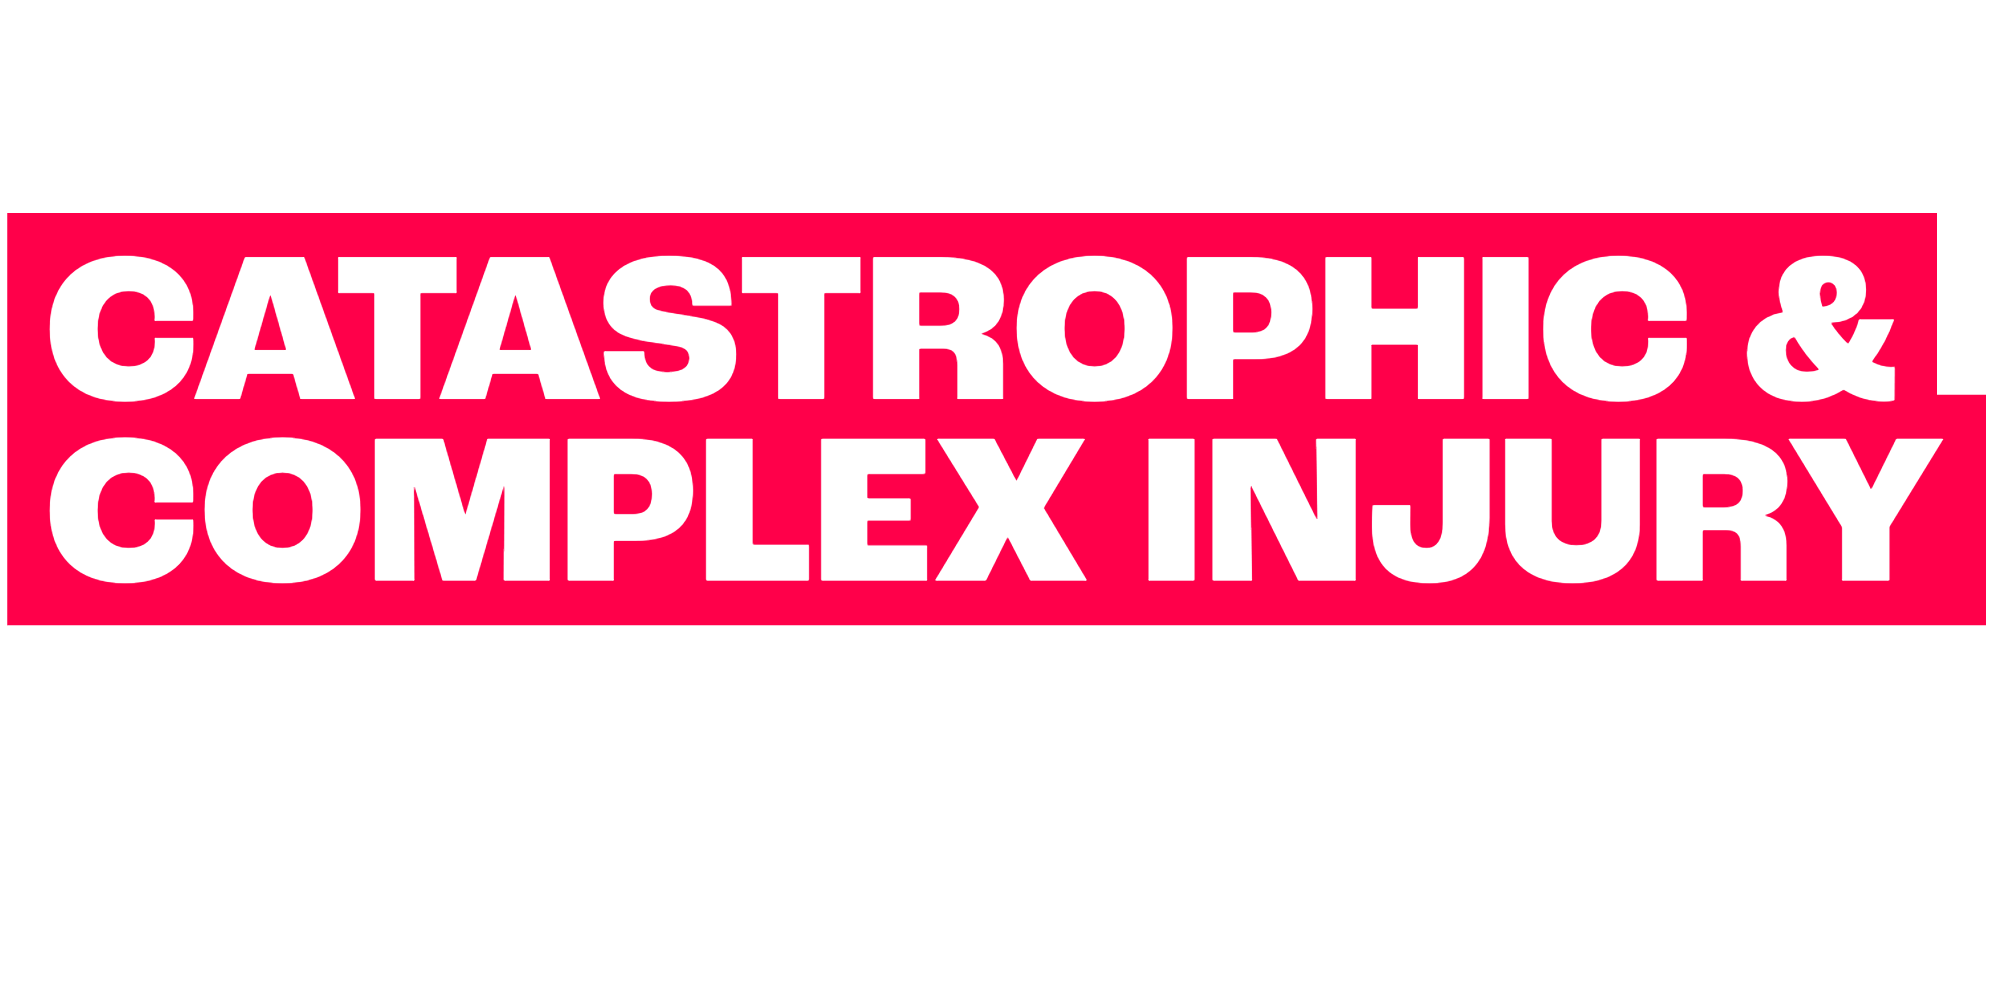 Complex & Catastrophic Injury